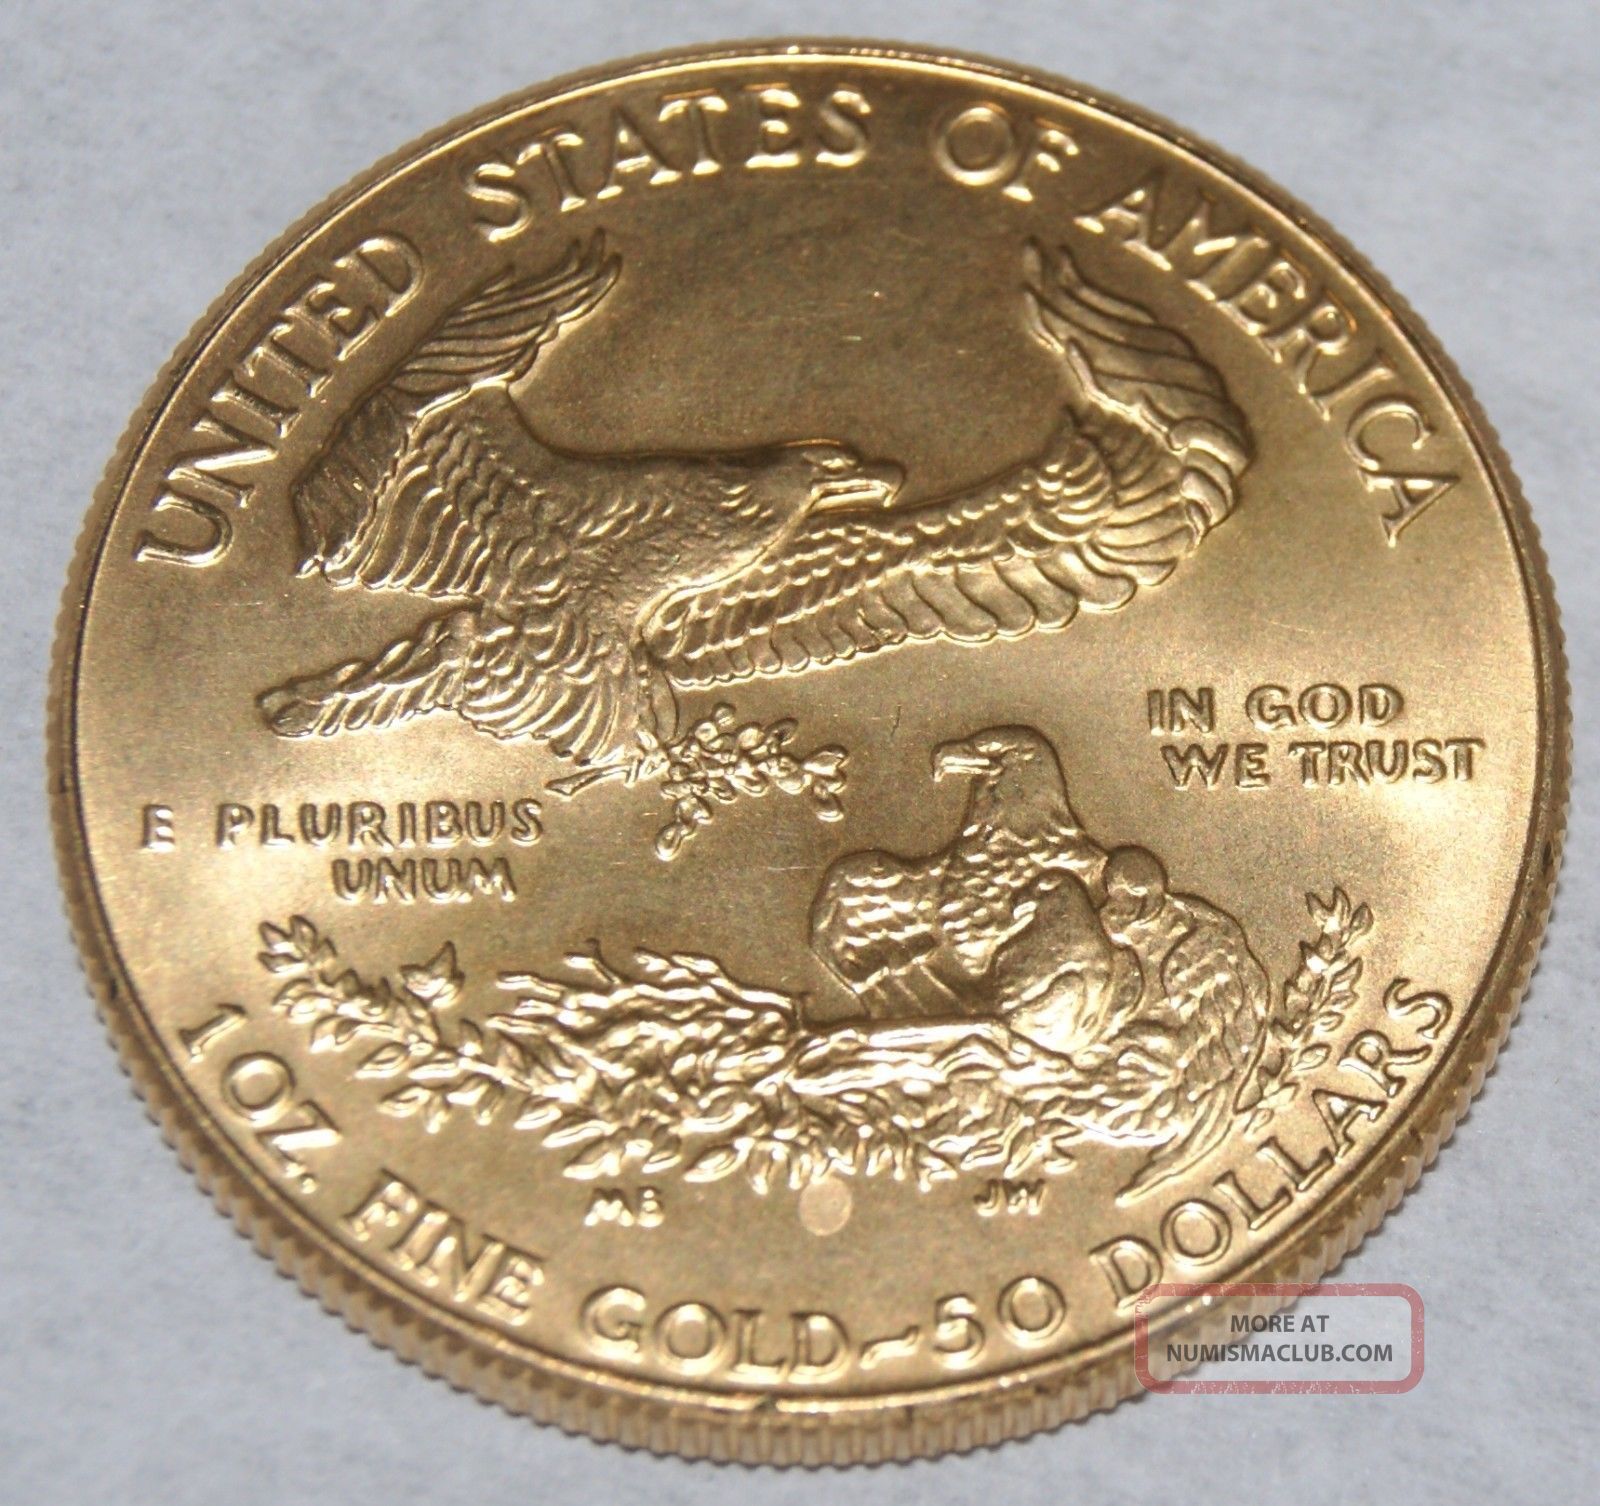 1986 1 Oz. Gold American Eagle Coin